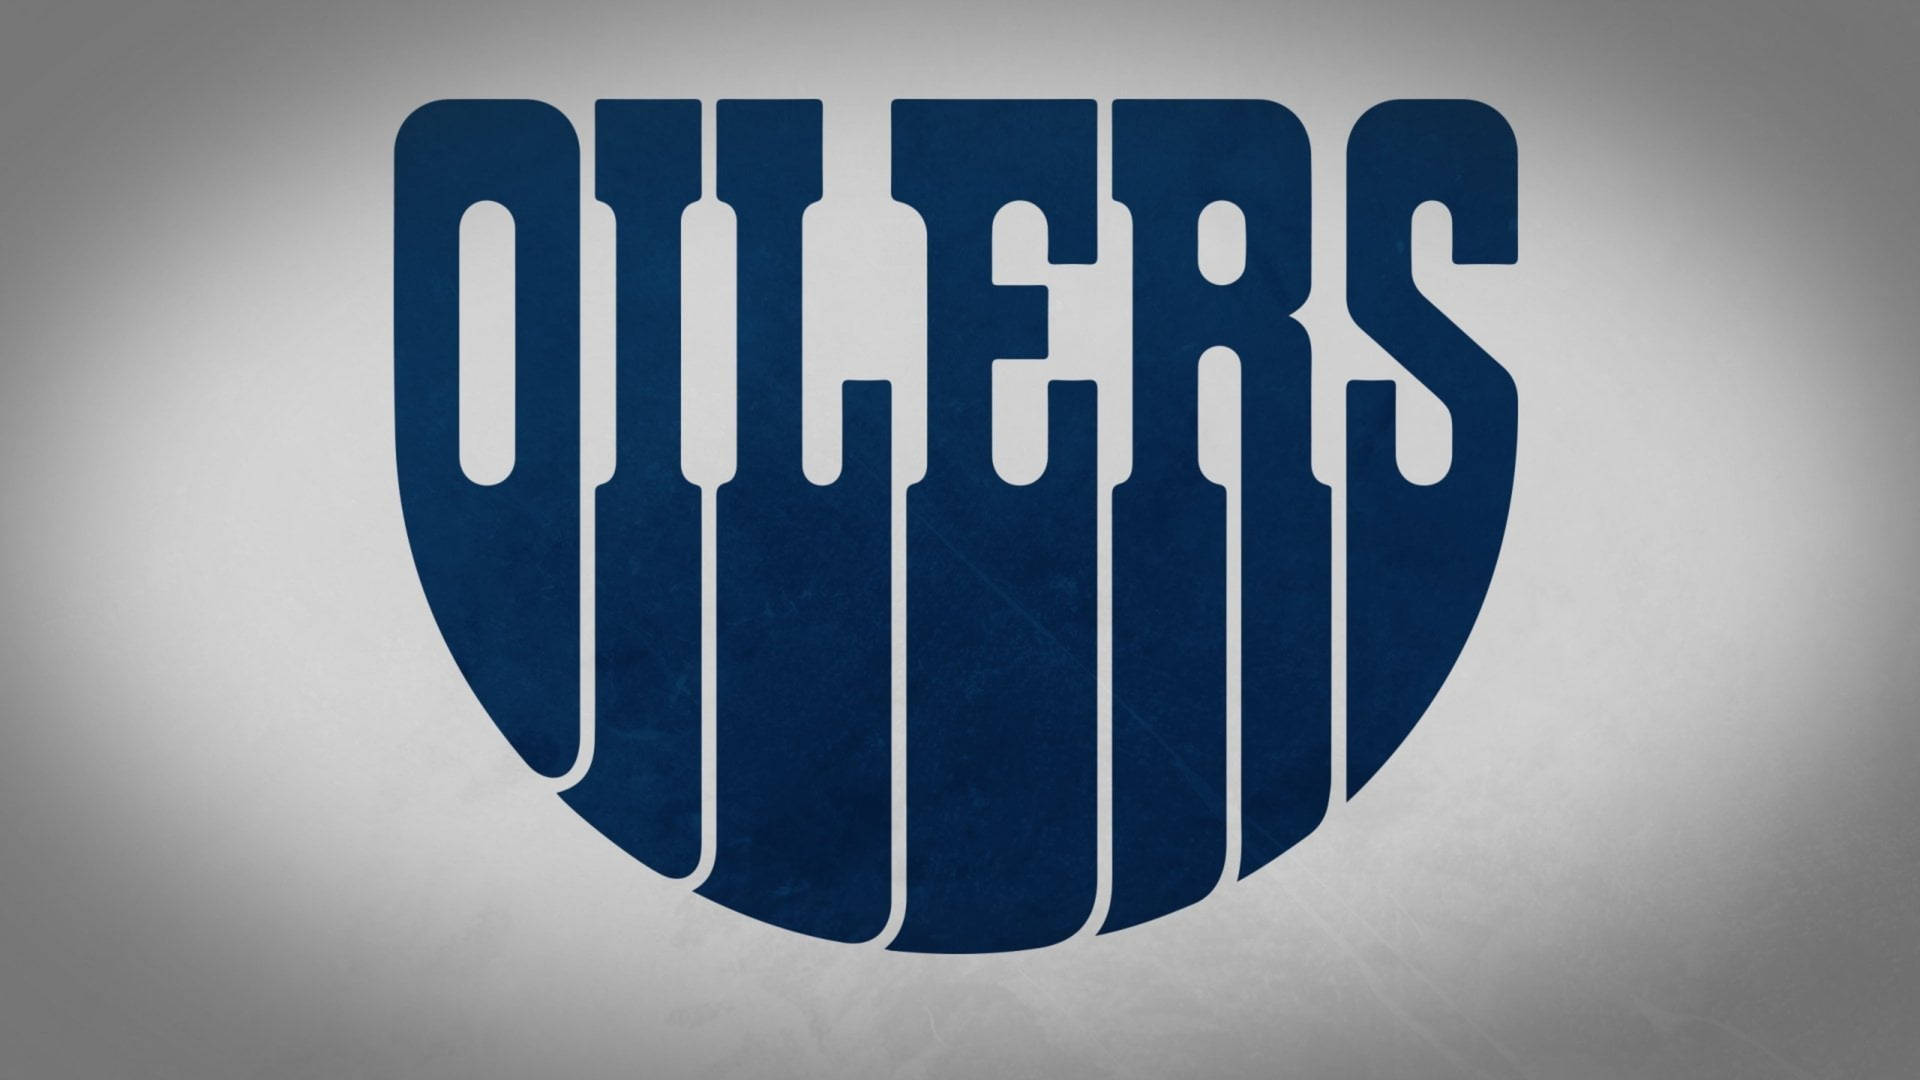 Edmonton Oilers NHL Minimalist Blue Wallpaper